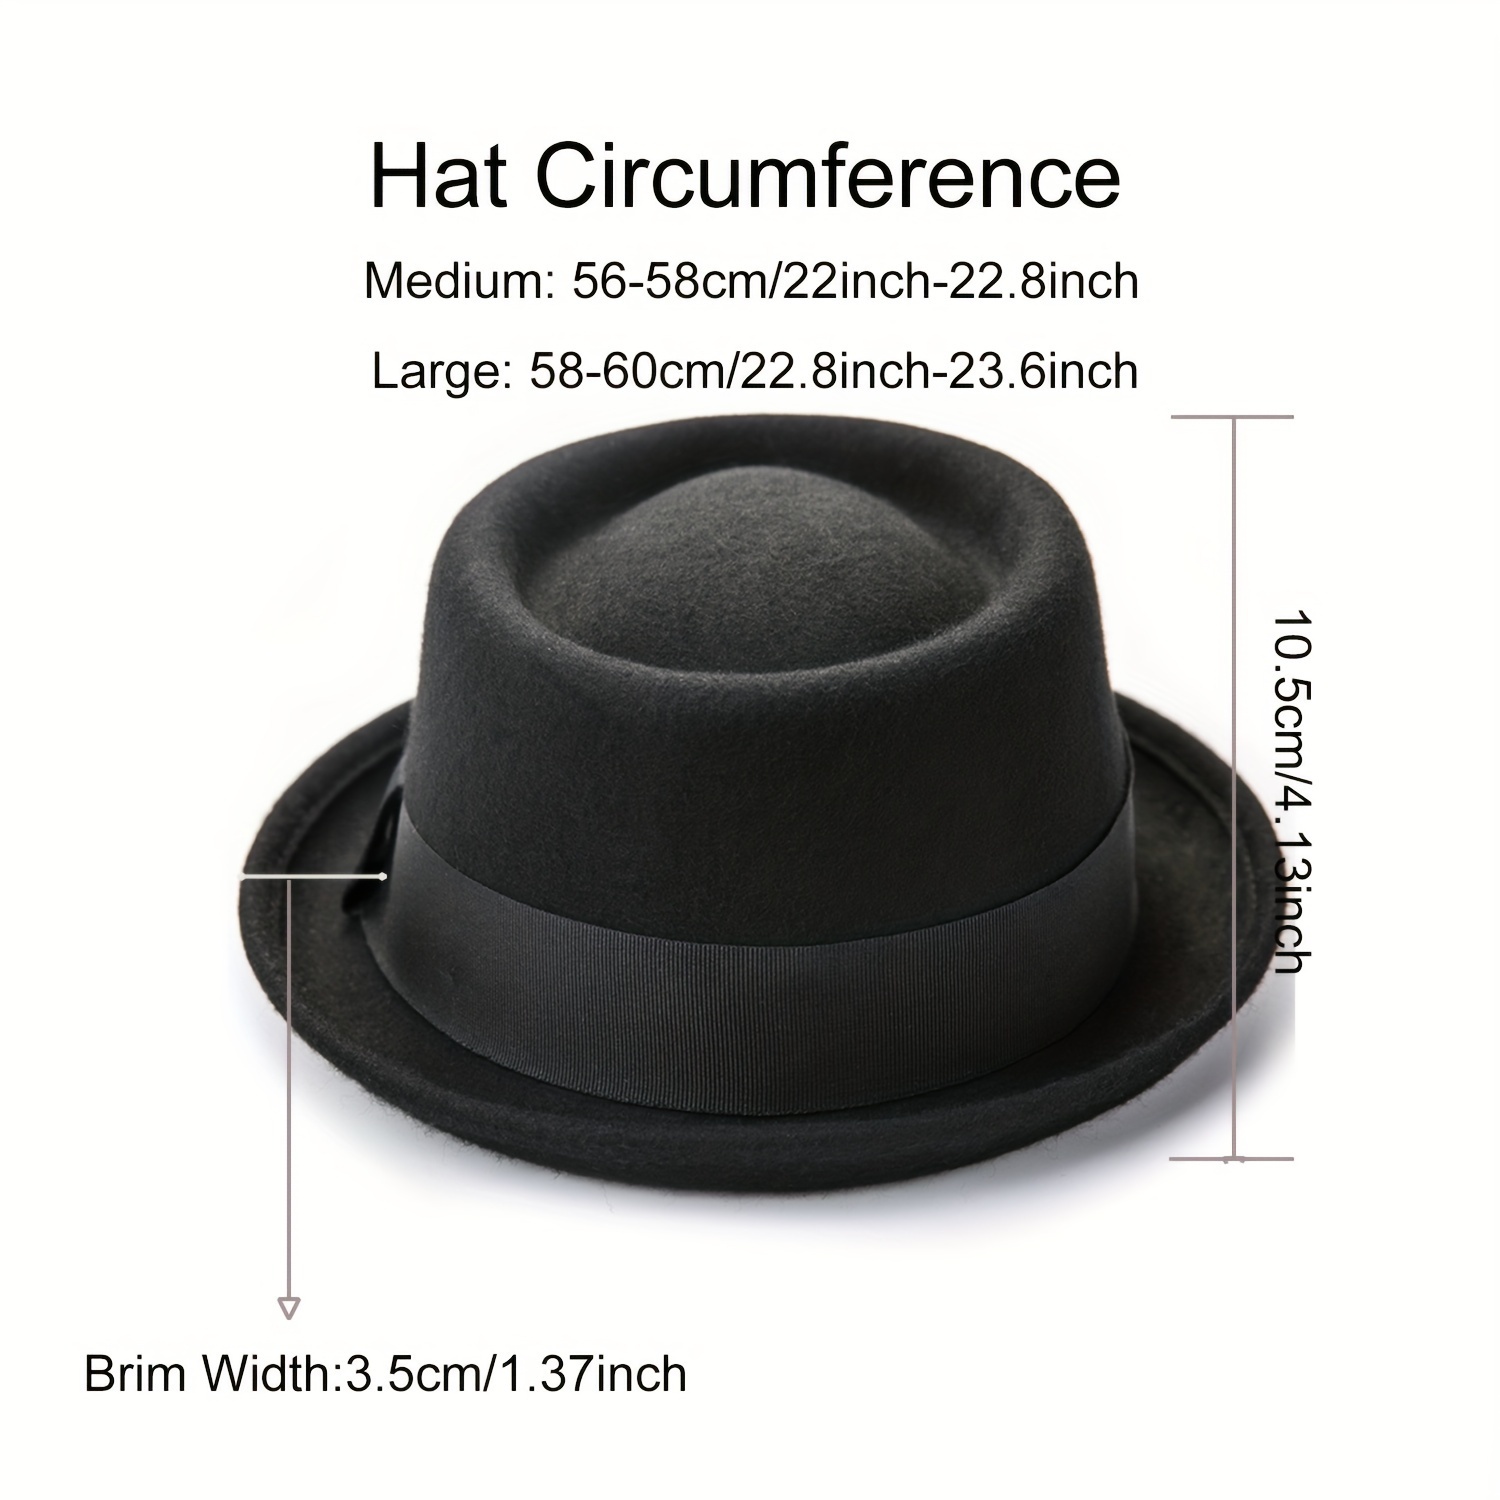 Sombrero Vintage para hombre, sombrero de ala ancha, Sombrero Fedora Plano